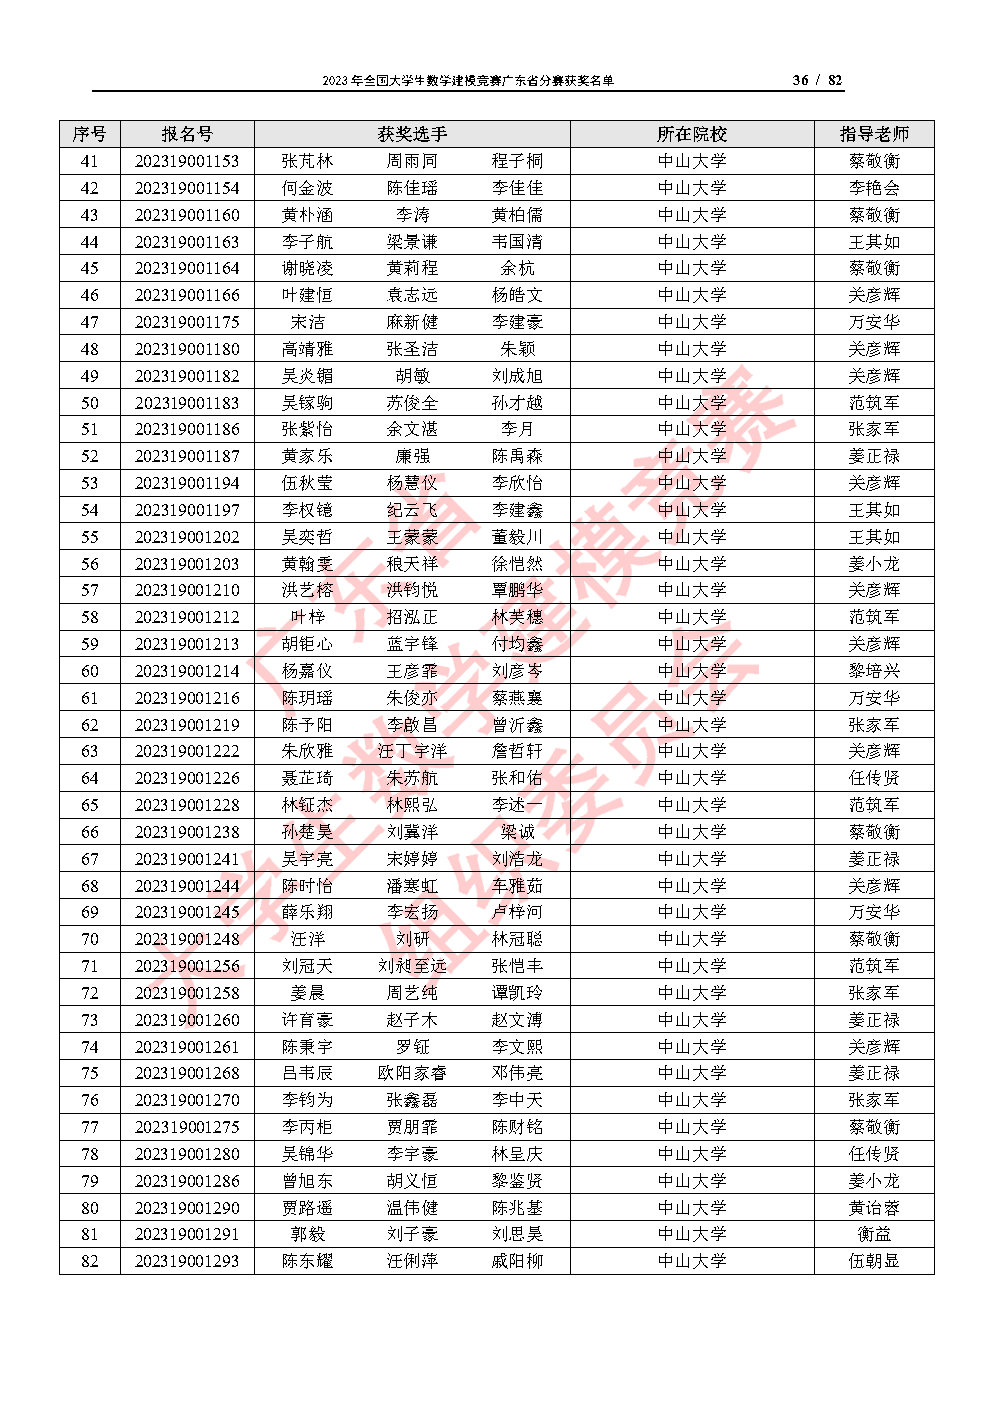 2023年全国大学生数学建模竞赛广东省分赛获奖名单_Page36.jpg